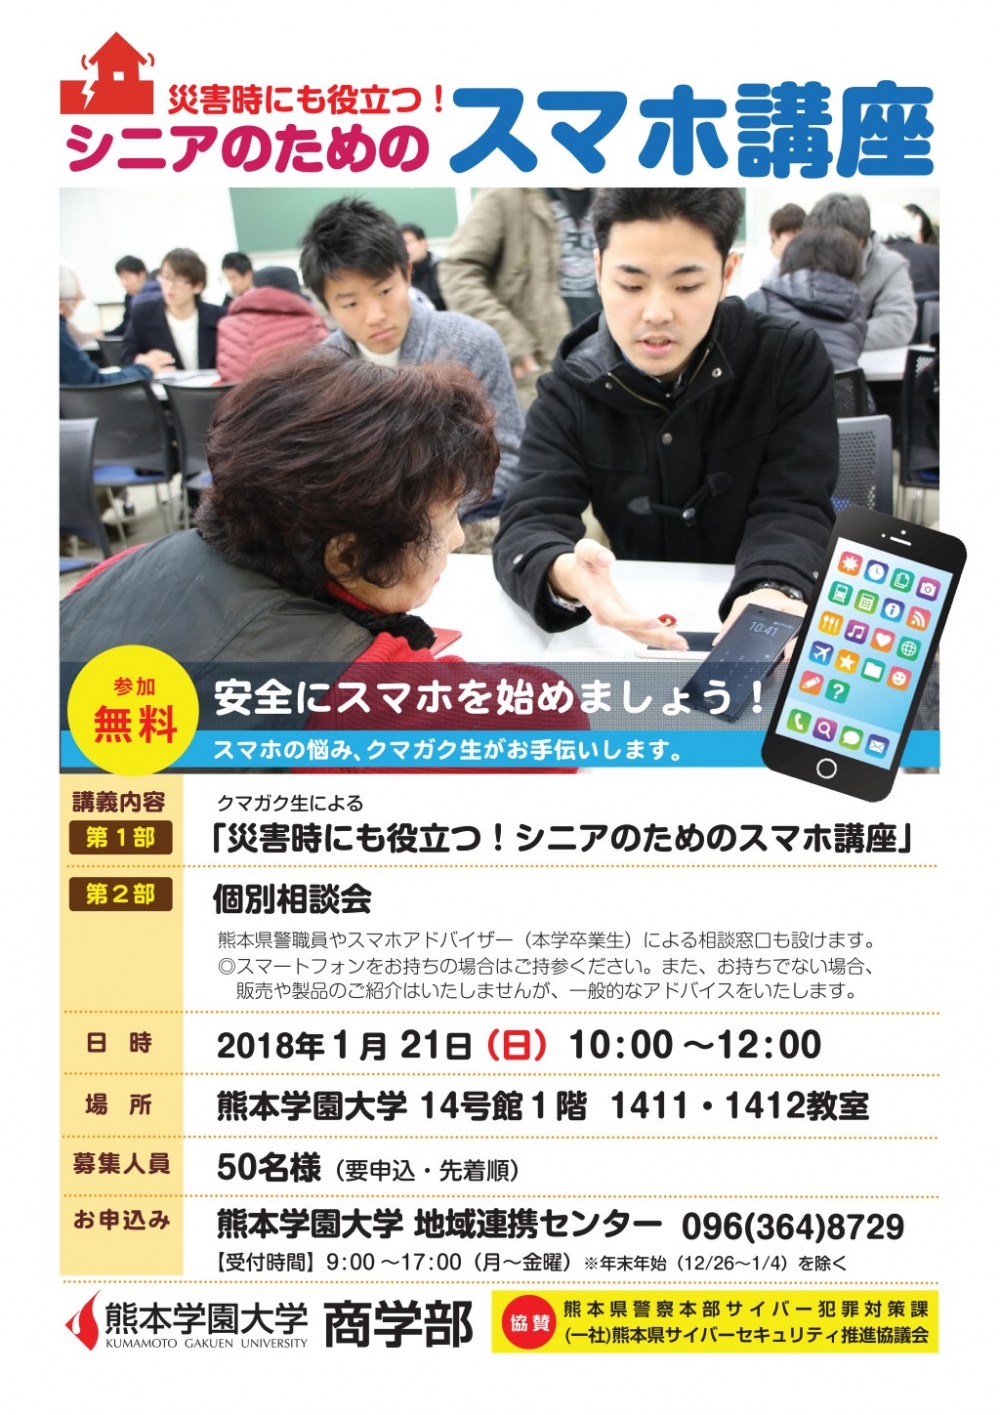 災害時にも役立つ シニアのためのスマホ講座 を開催します 1月21日 日 午前10時 地域 イベント情報 熊本学園大学 熊本で学ぶ 九州を創る